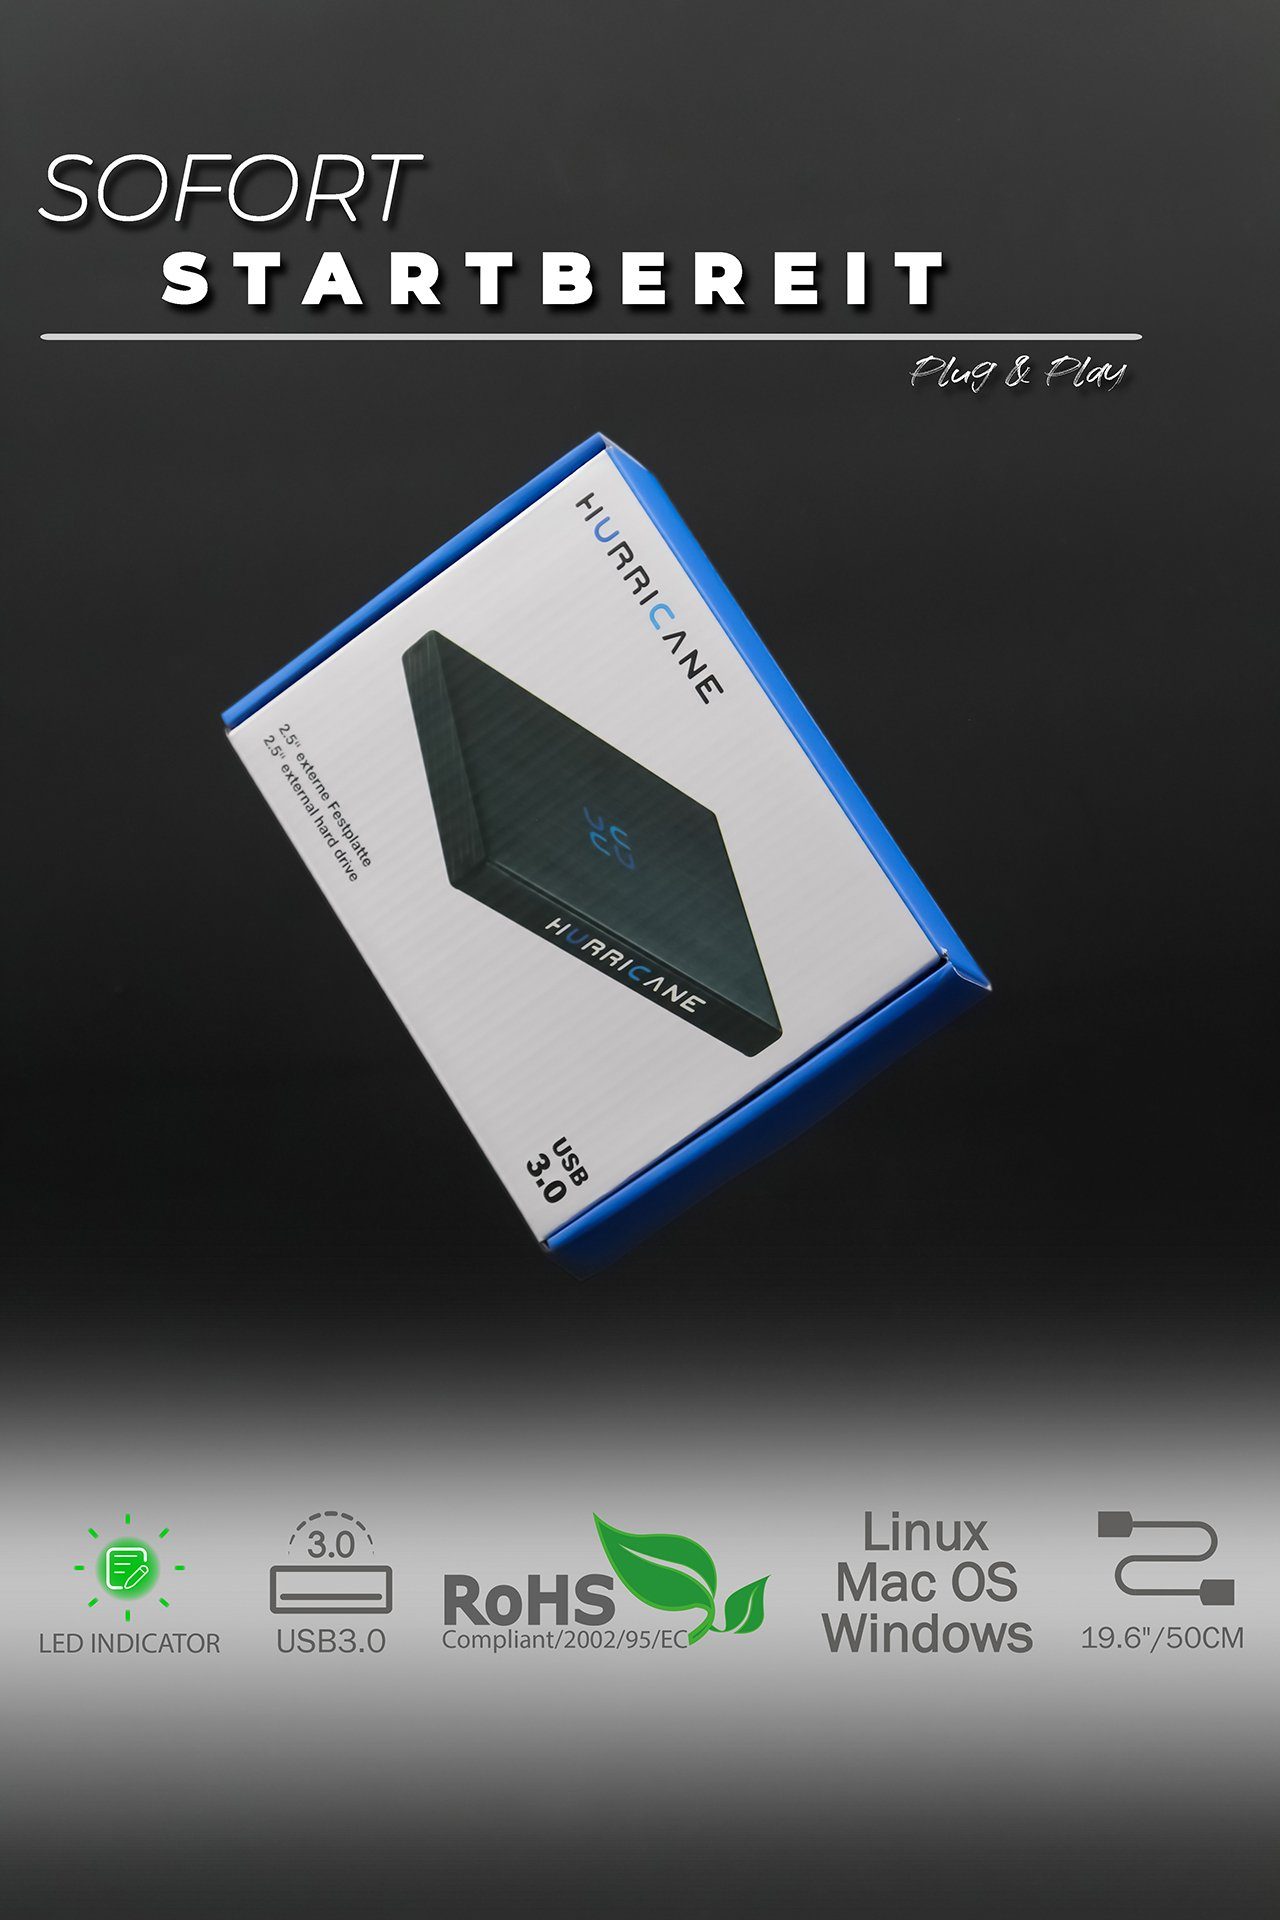 HURRICANE GD25612 Tragbare Externe kompatibel Xbox, PS5 Festplatte Laptop 2,5", und 500GB Mac für Windows, HDD-Festplatte 2,5" mit Linux PS4 (500GB) USB TV 3.0 externe